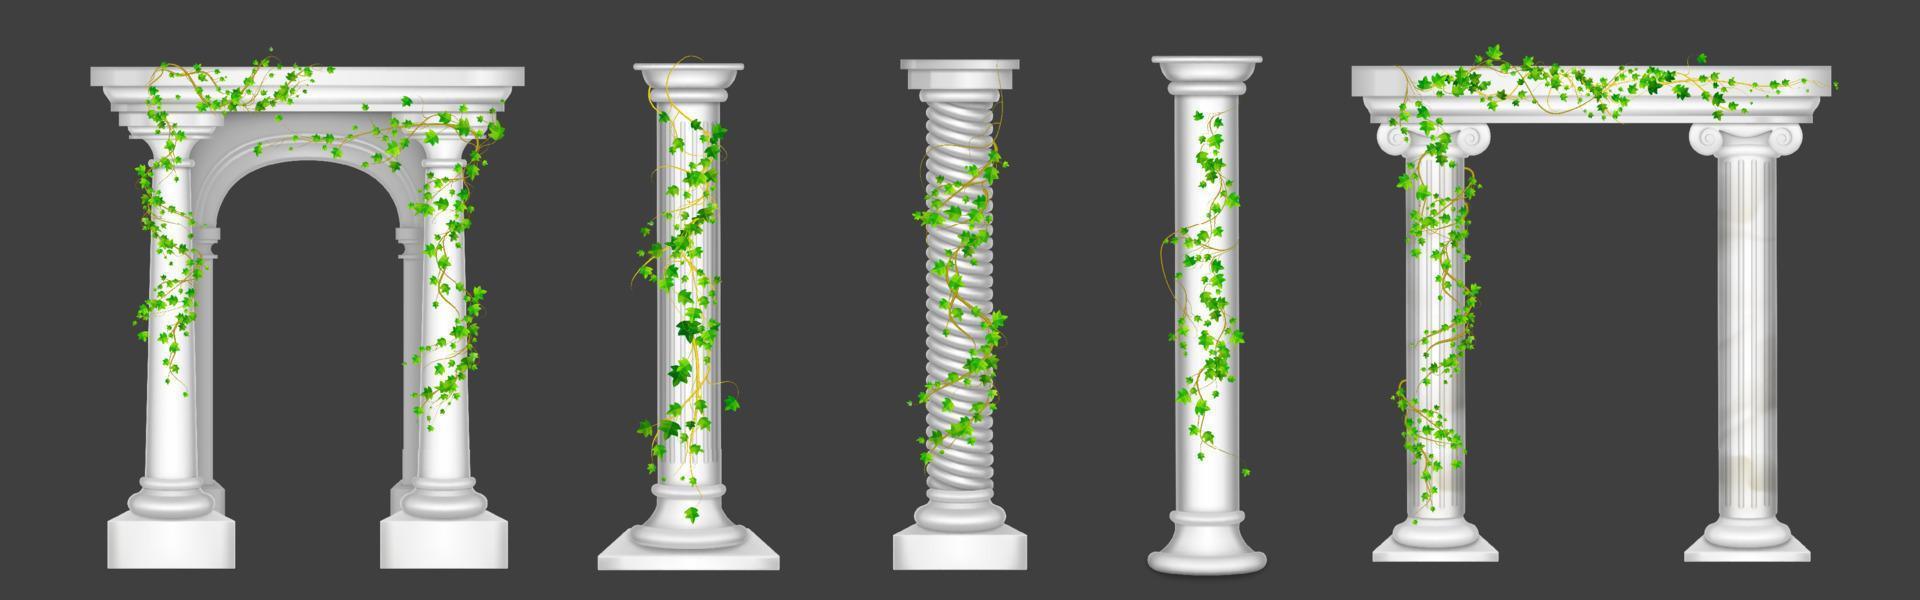 murgröna på marmor kolonner och valv, grön vinstockar vektor